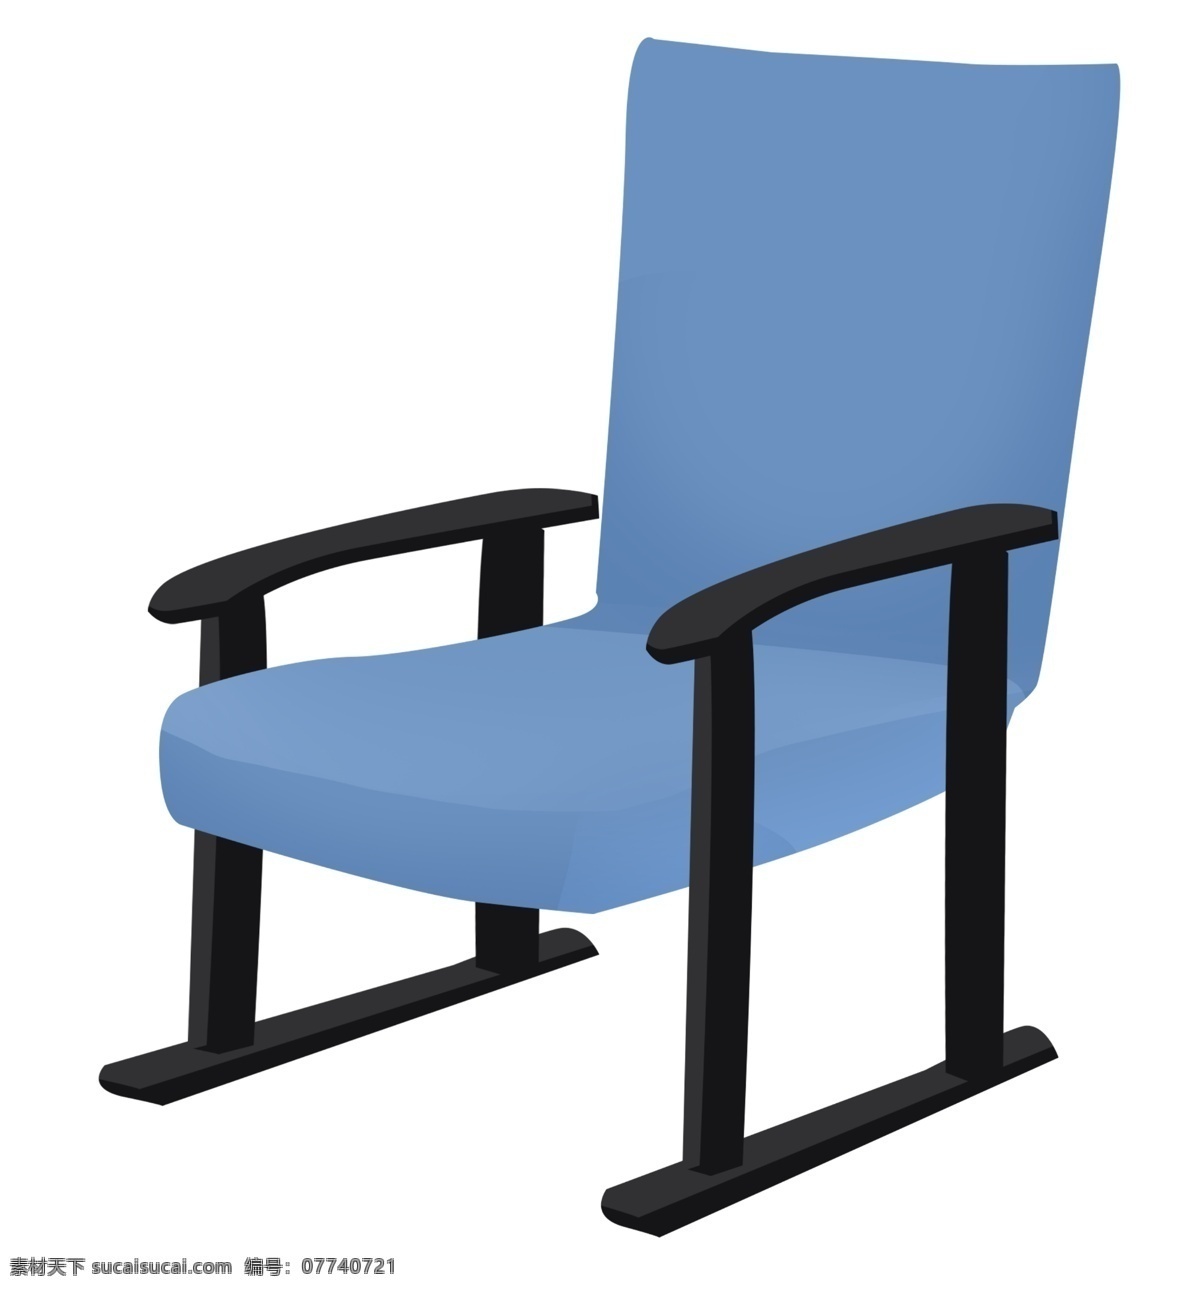 家具 椅子 装饰 插画 家具椅子 蓝色的椅子 漂亮的椅子 创意椅子 椅子装饰 椅子插画 卡通椅子